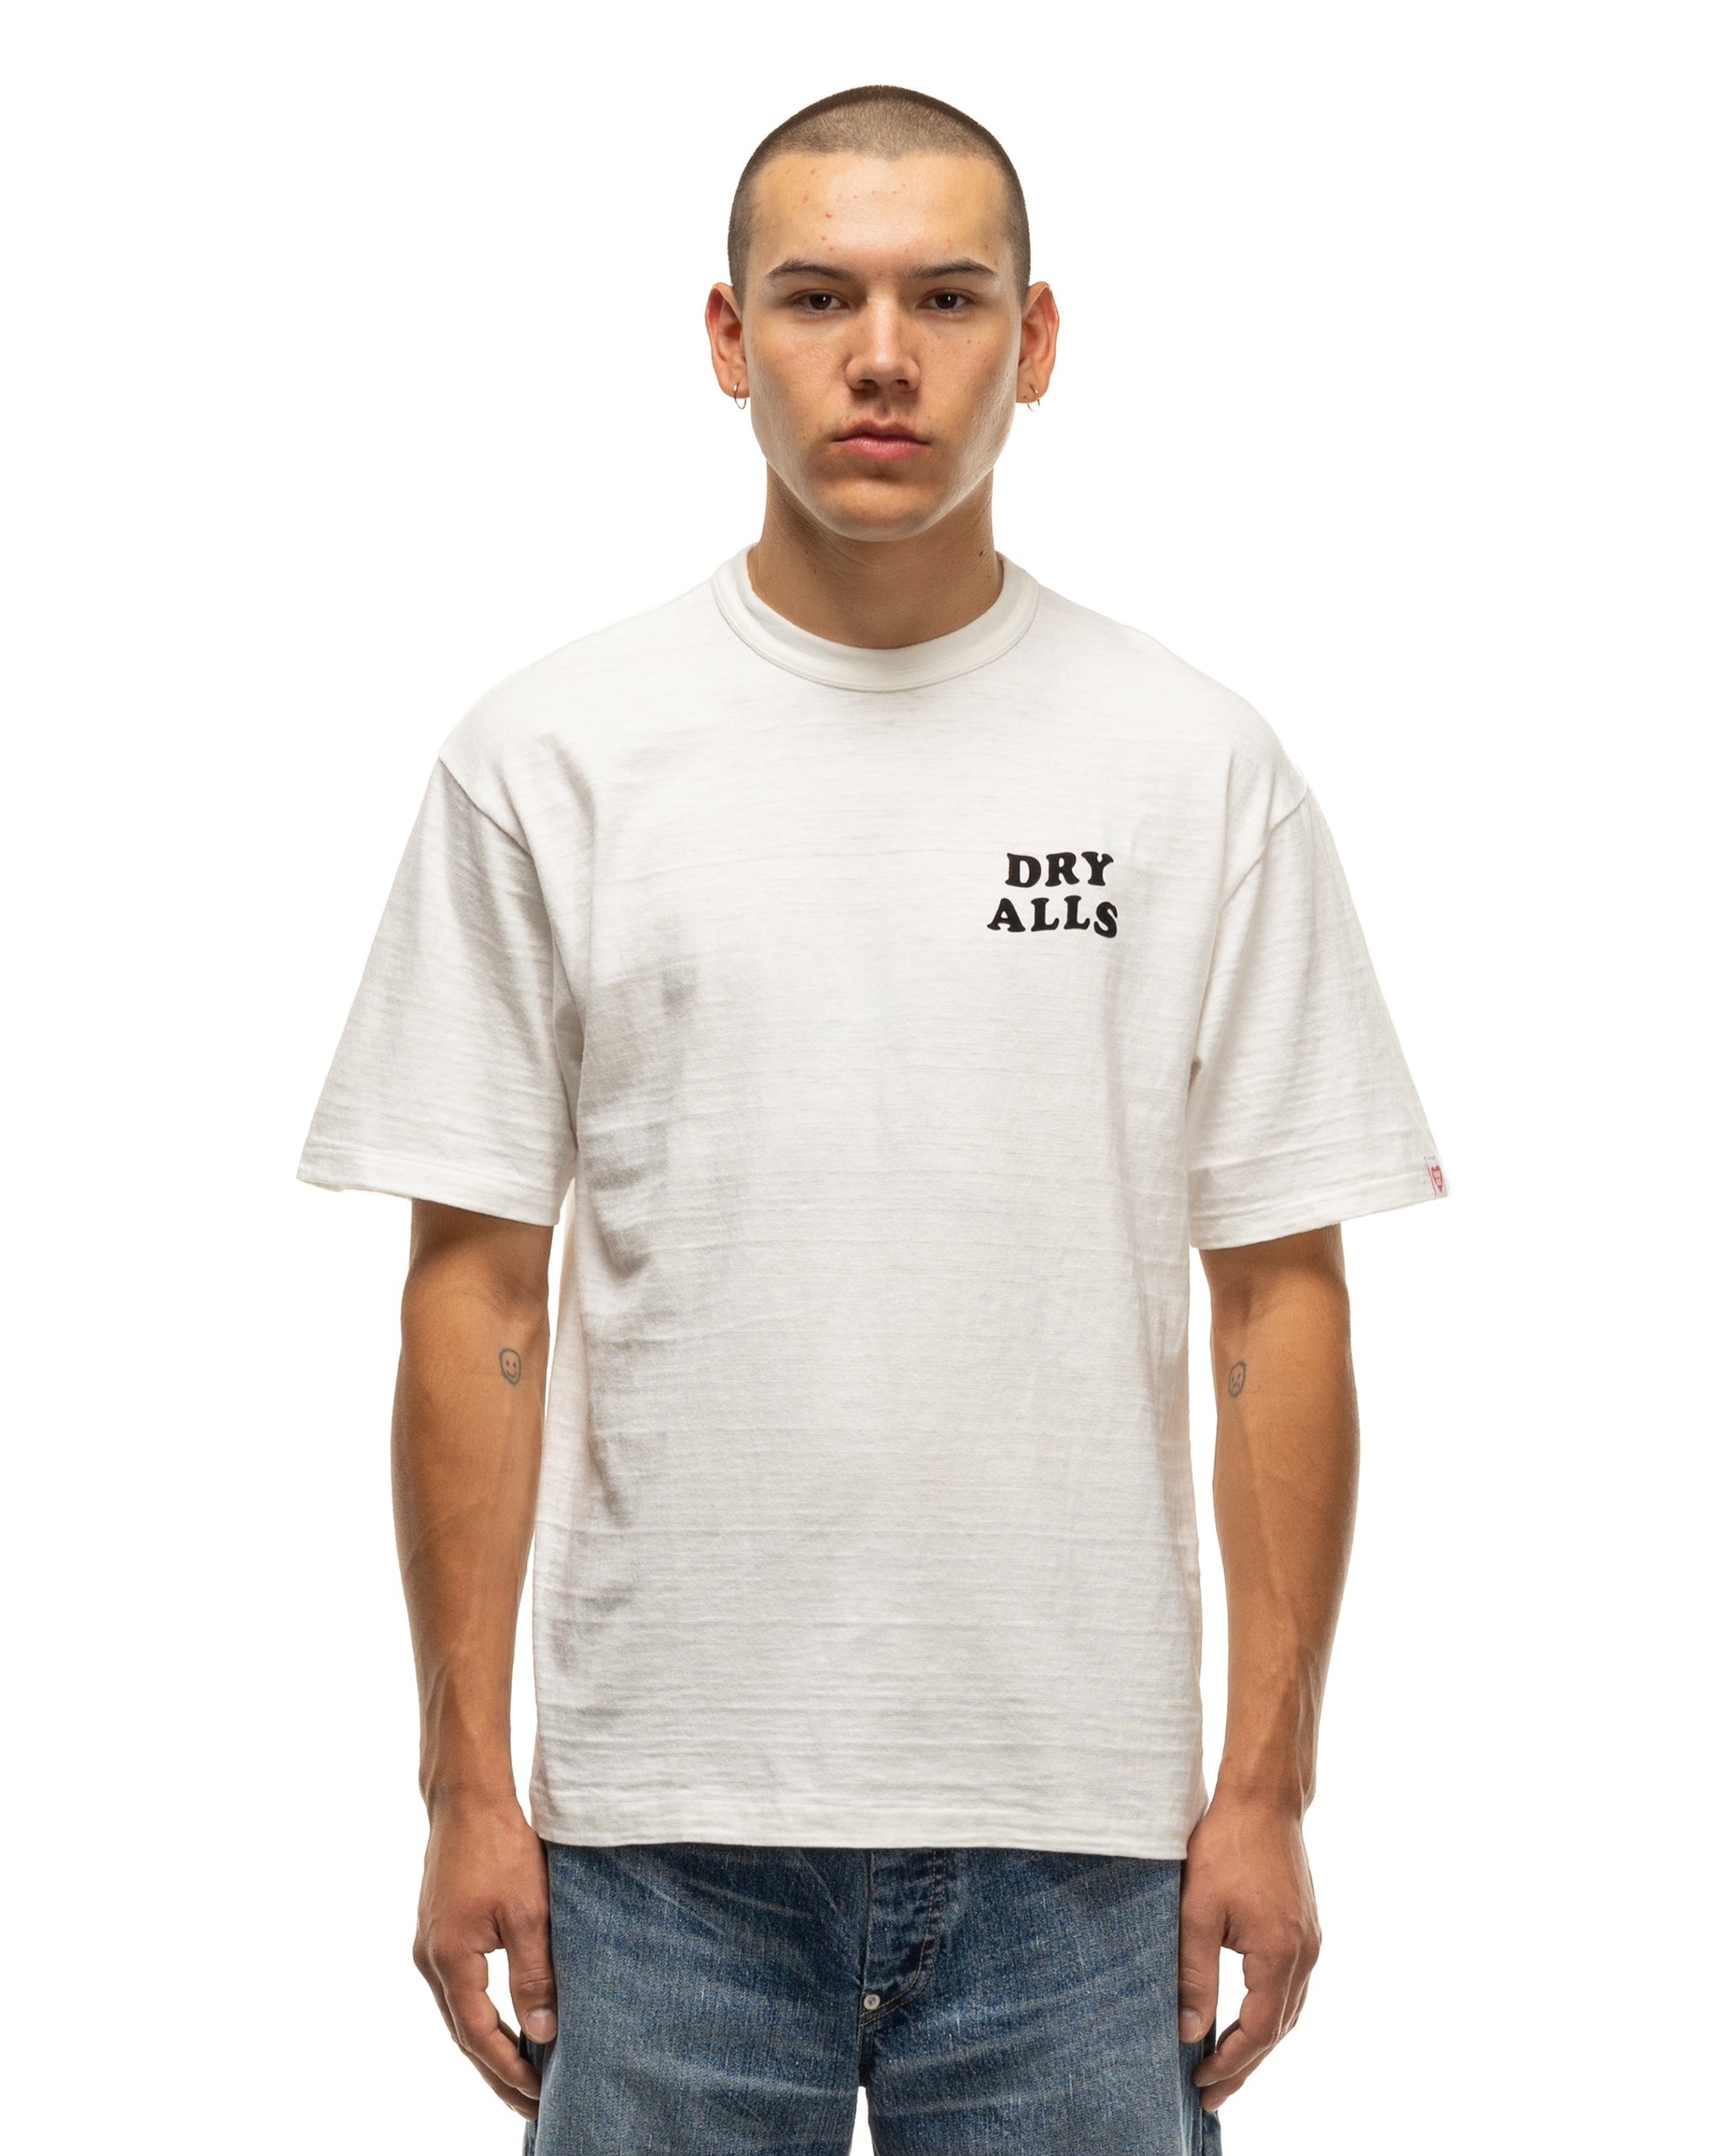 Graphic T Shirt # White